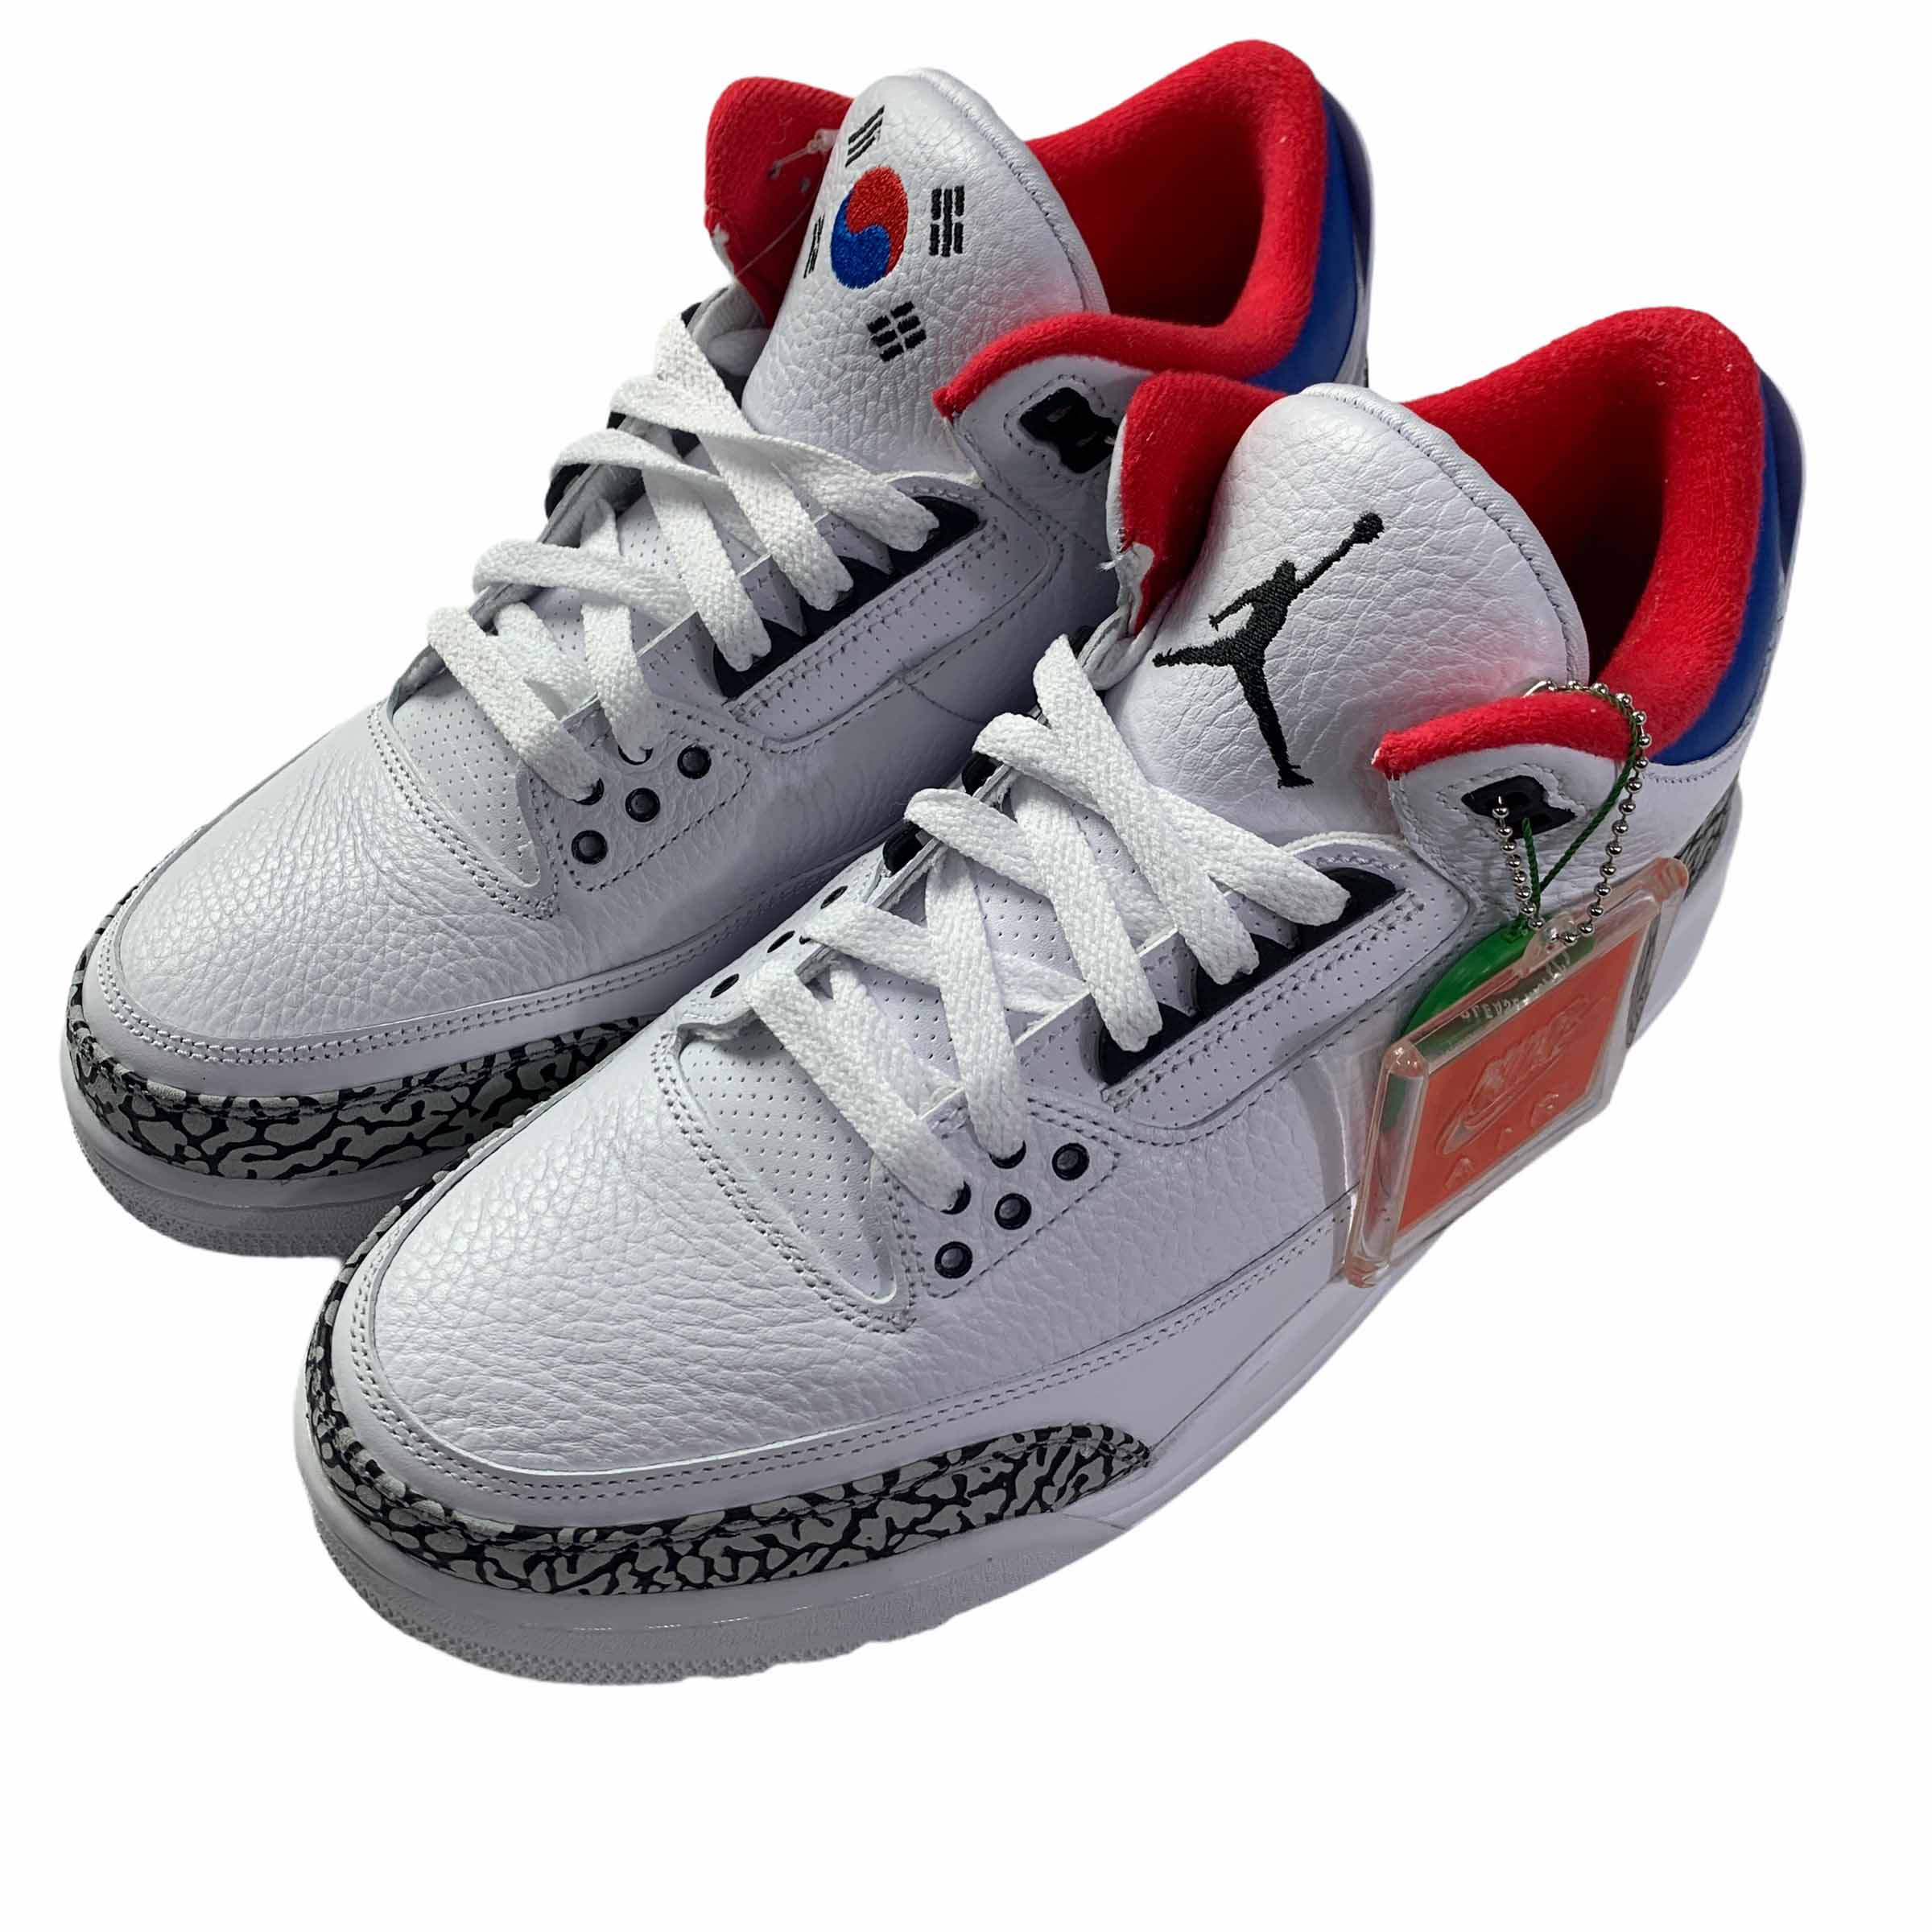 [Nike] Jordan 3 Retro Seoul - Size US9.5